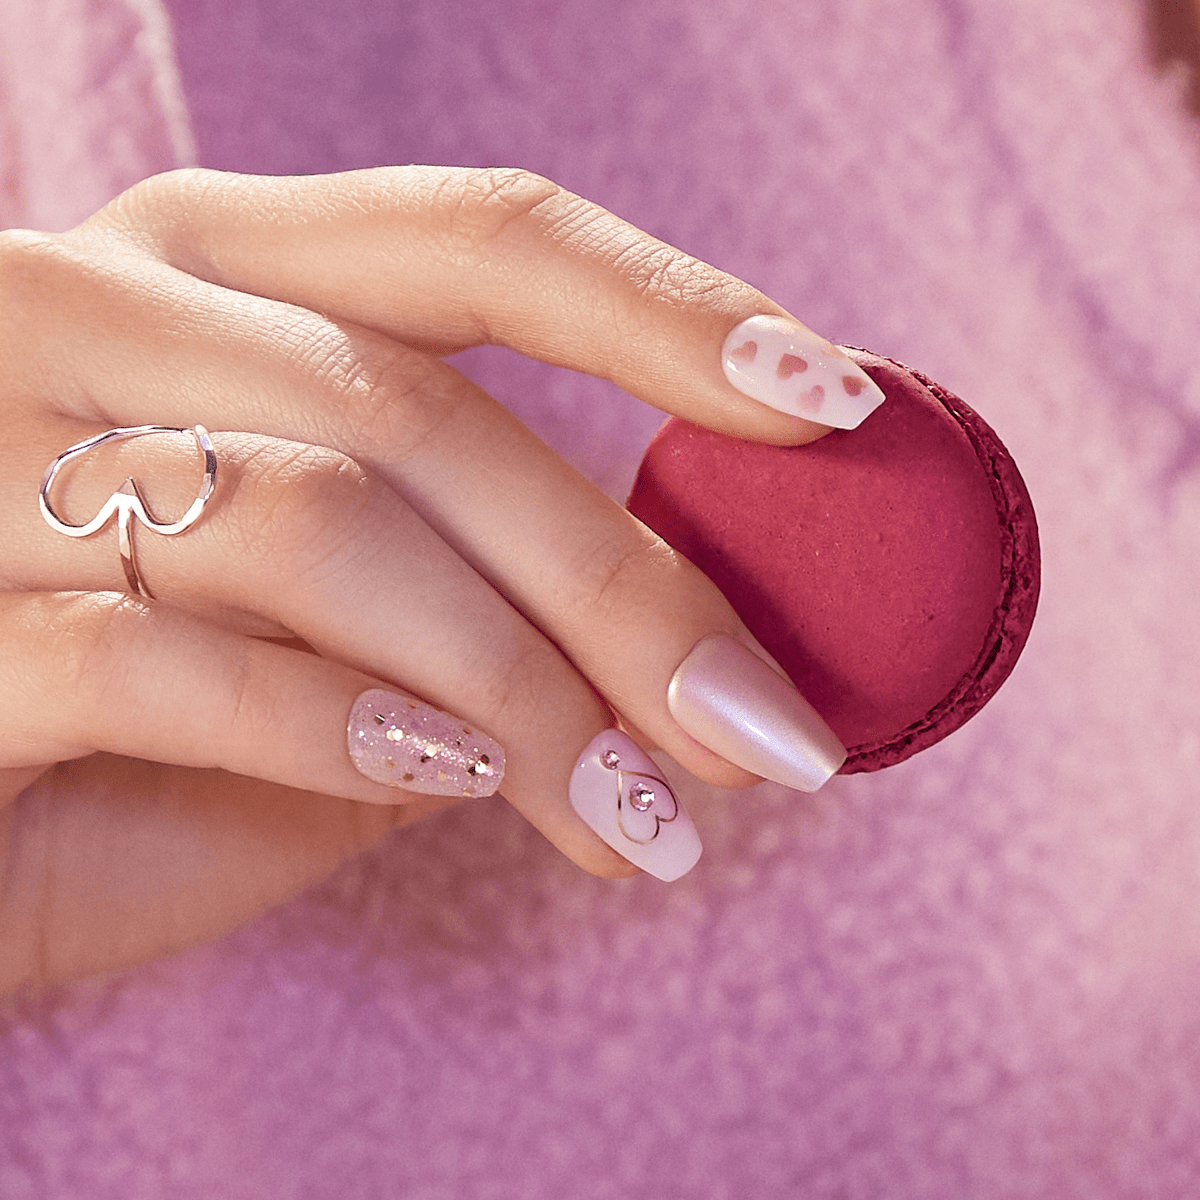 imPRESS Press-On Manicure Valentine Nails - Love Myself